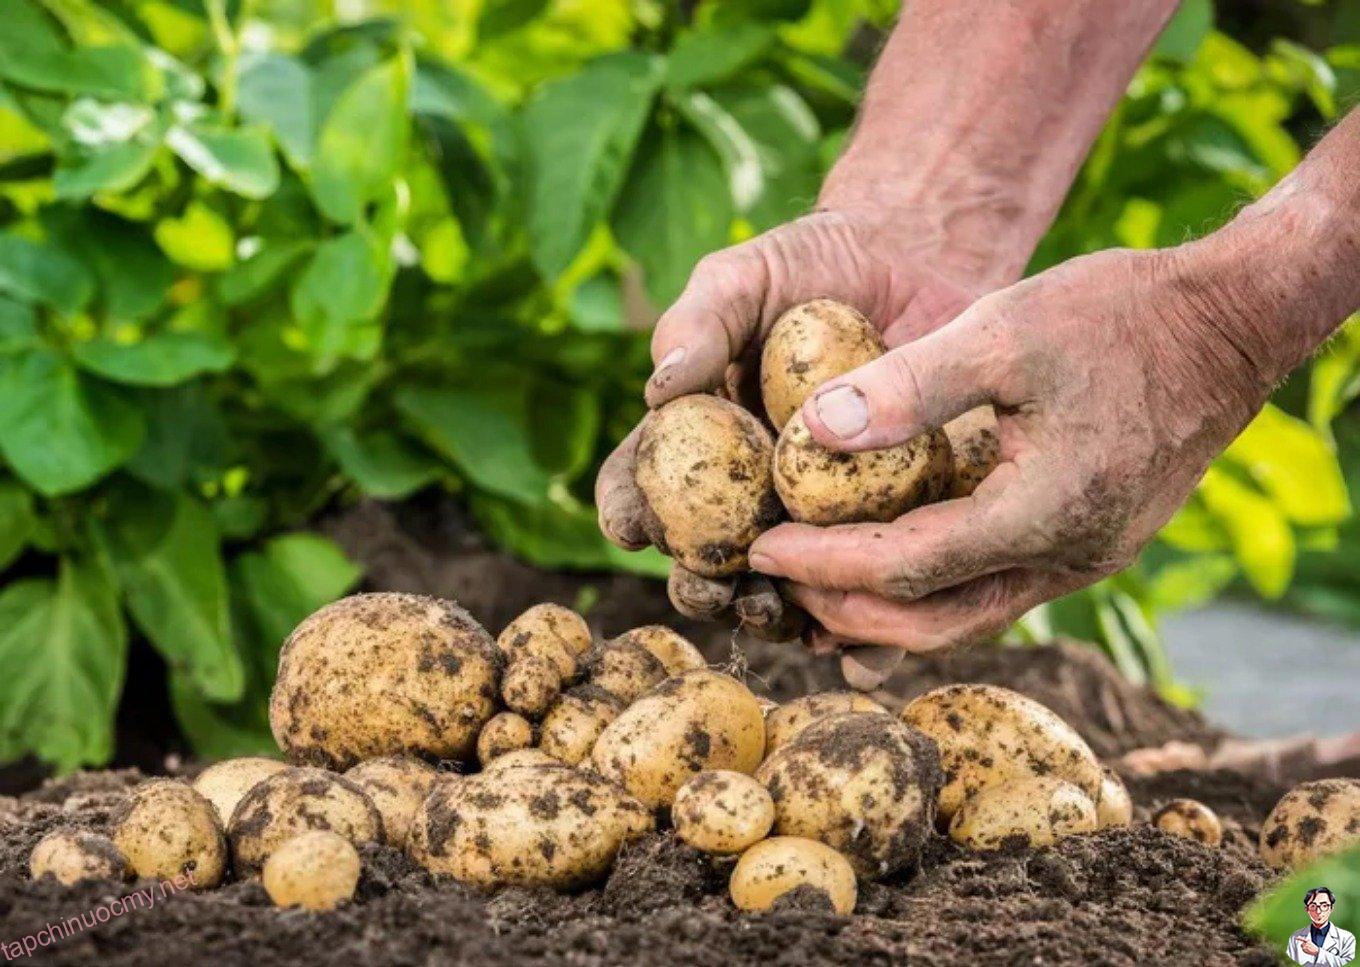 Hướng dẫn bạn cách trồng khoai tây cực dễ từ củ mọc mầm - Ảnh 5.